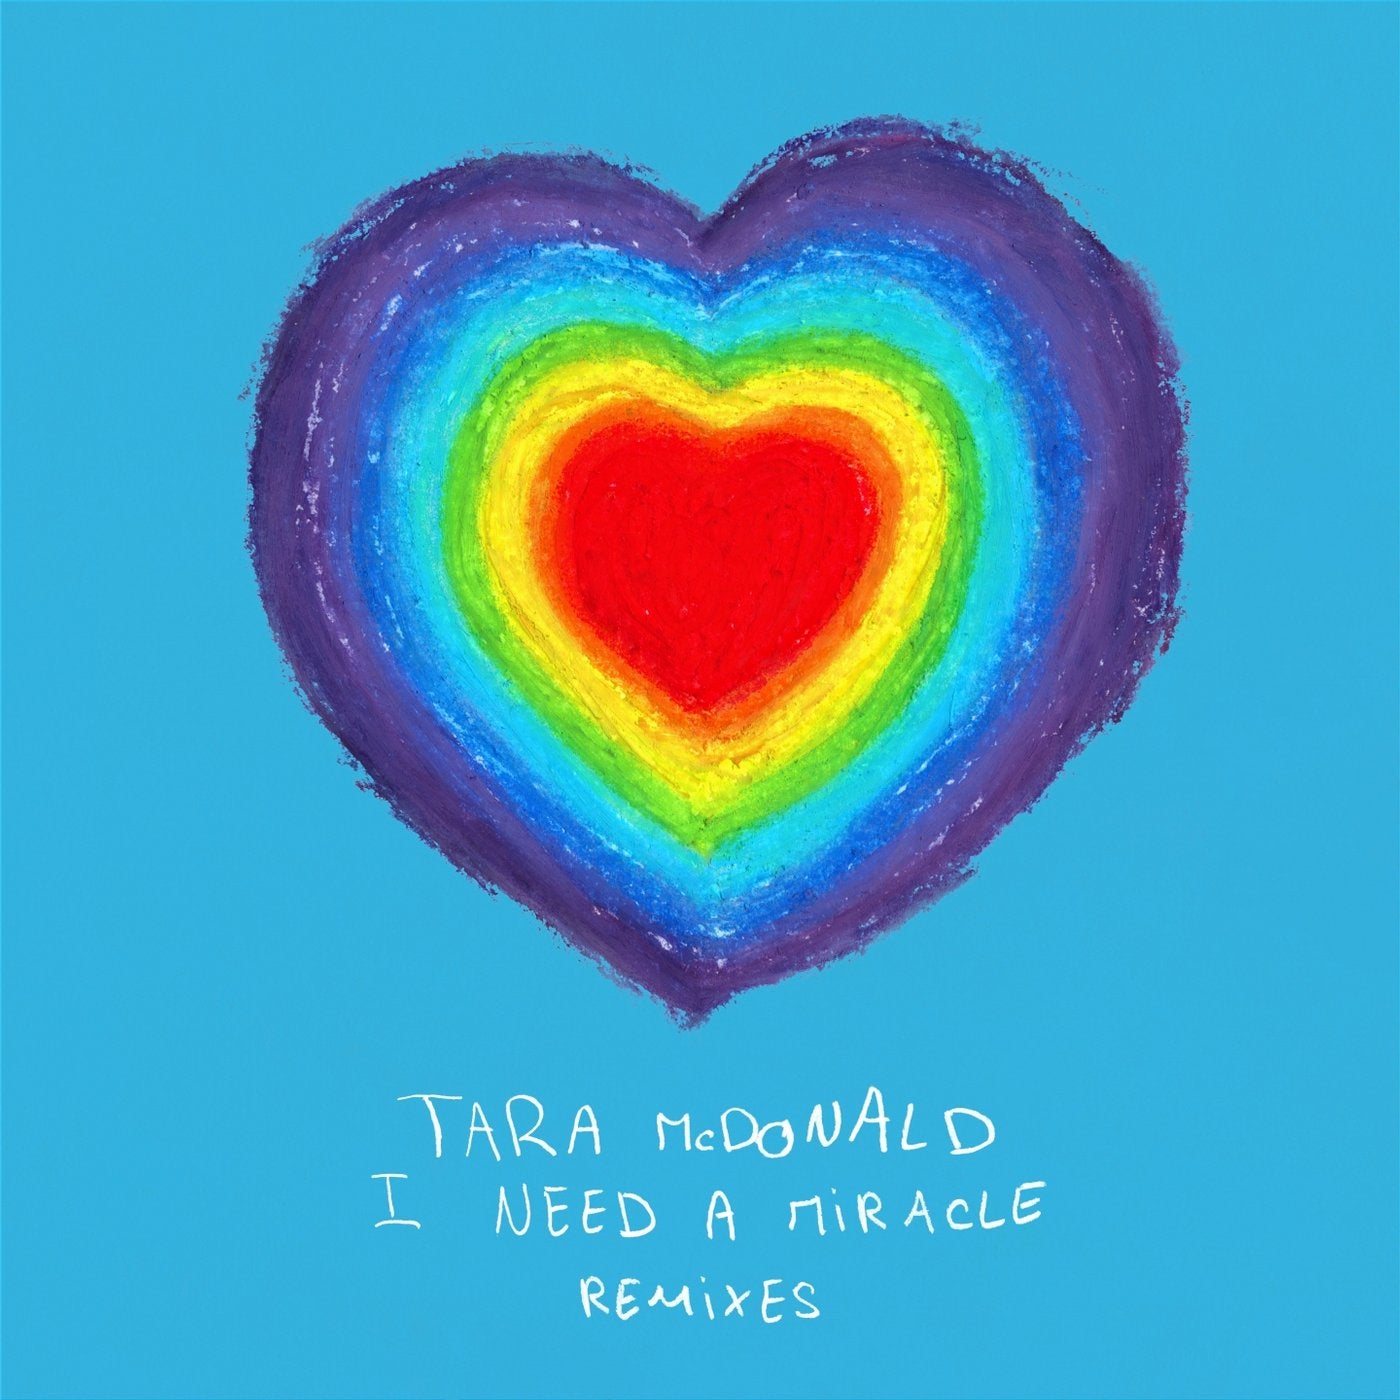 I Need a Miracle (Remixes)